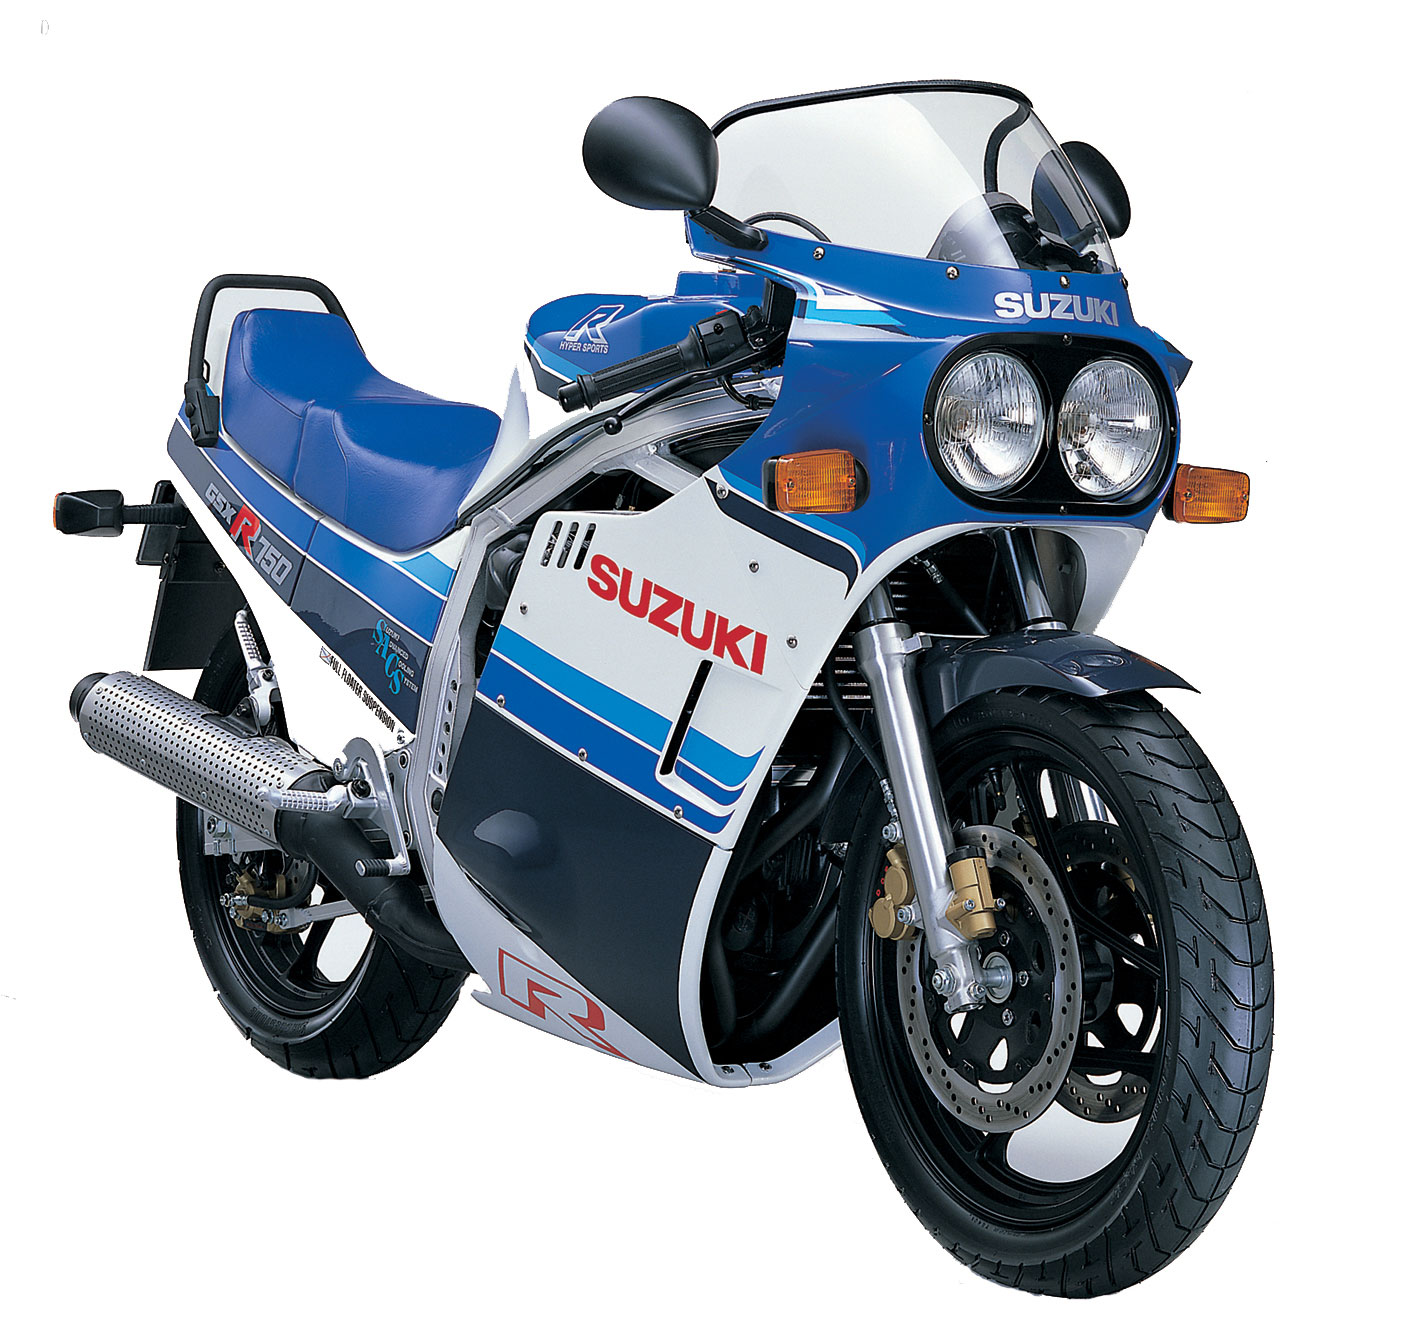 Kawasaki Z750 bikes for sale in Australia 